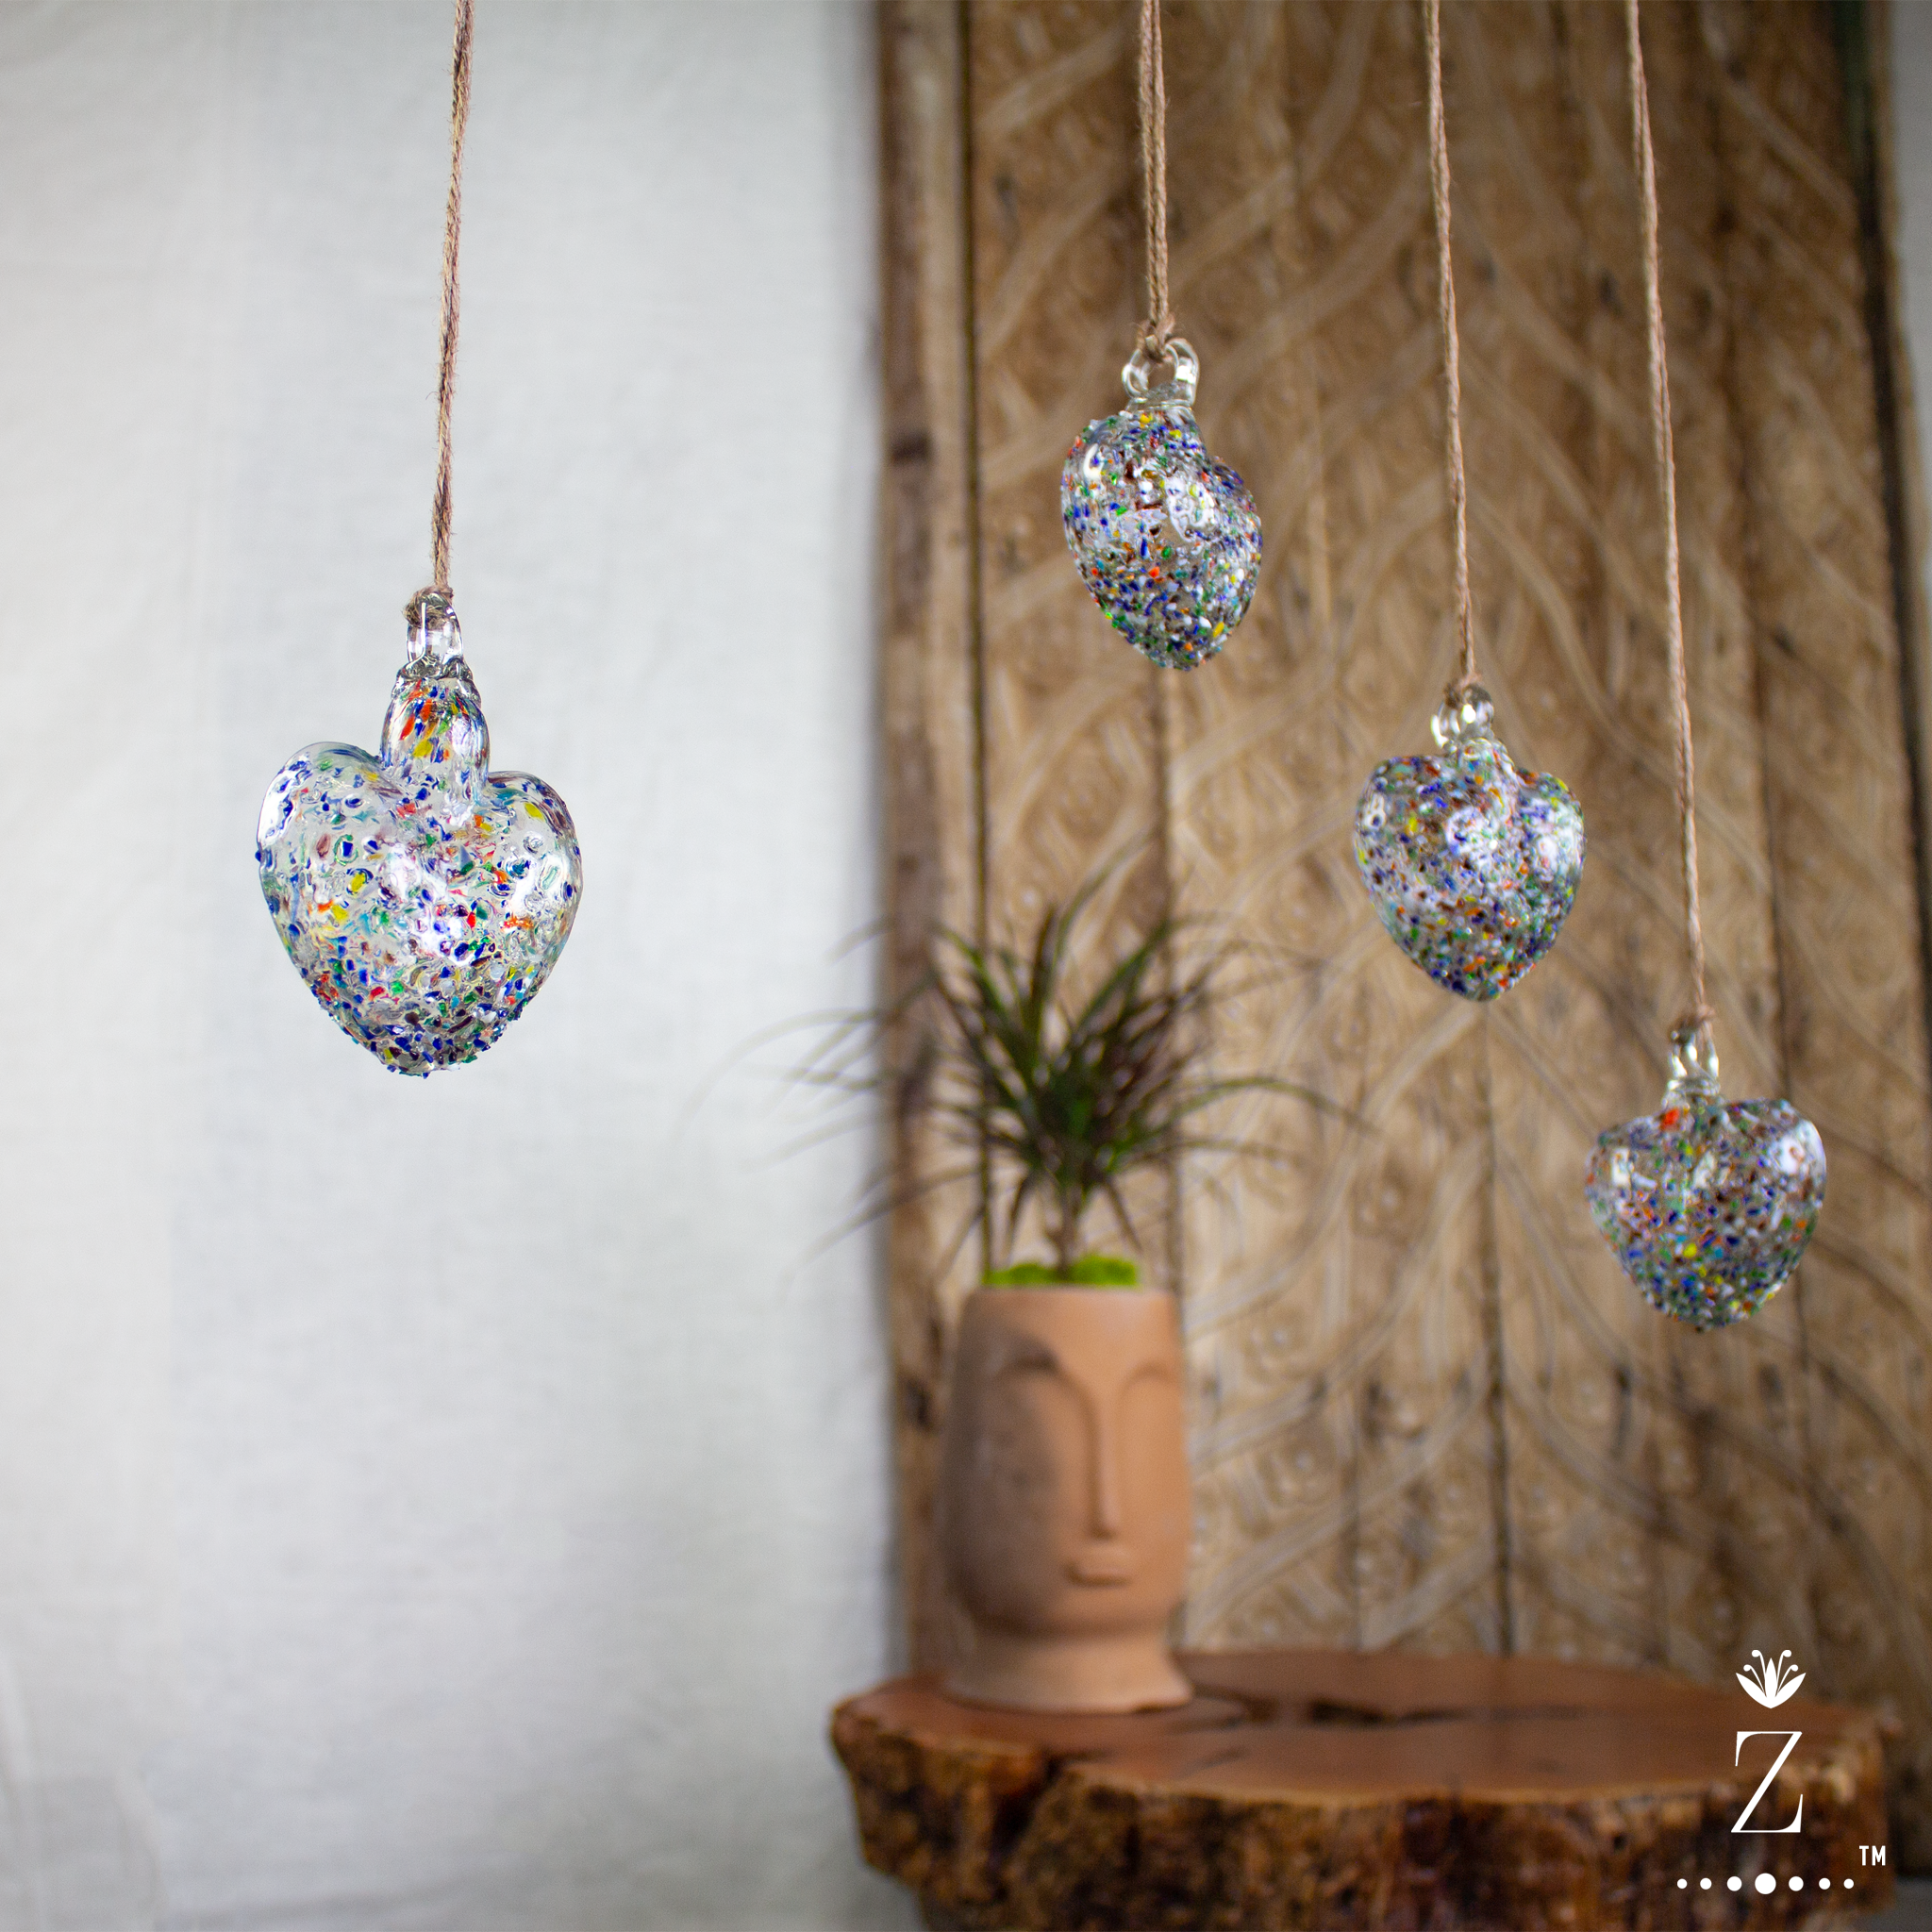 Ornamental Confetti Glass Heart, Small hanging glass hearts